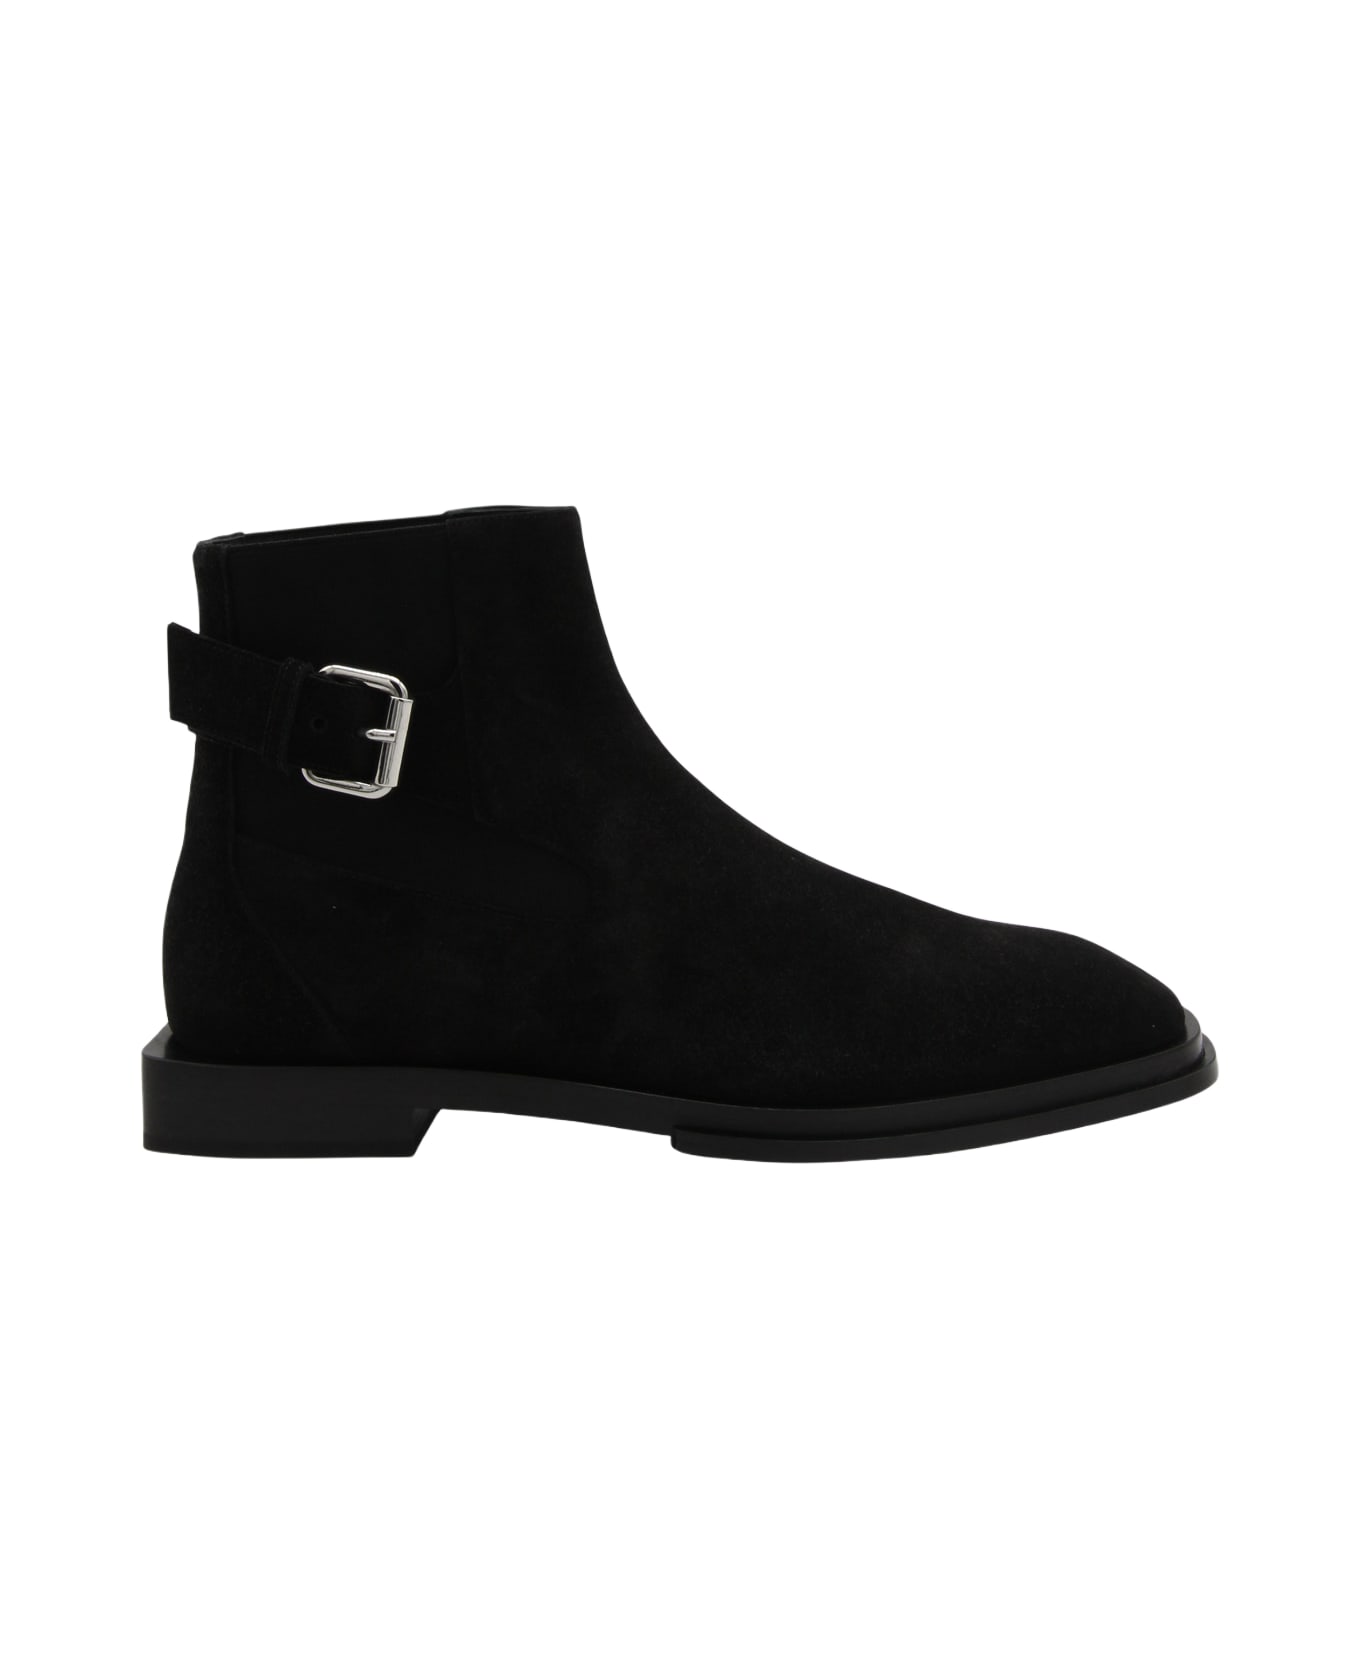 Alexander McQueen Black Suede Boots - Black